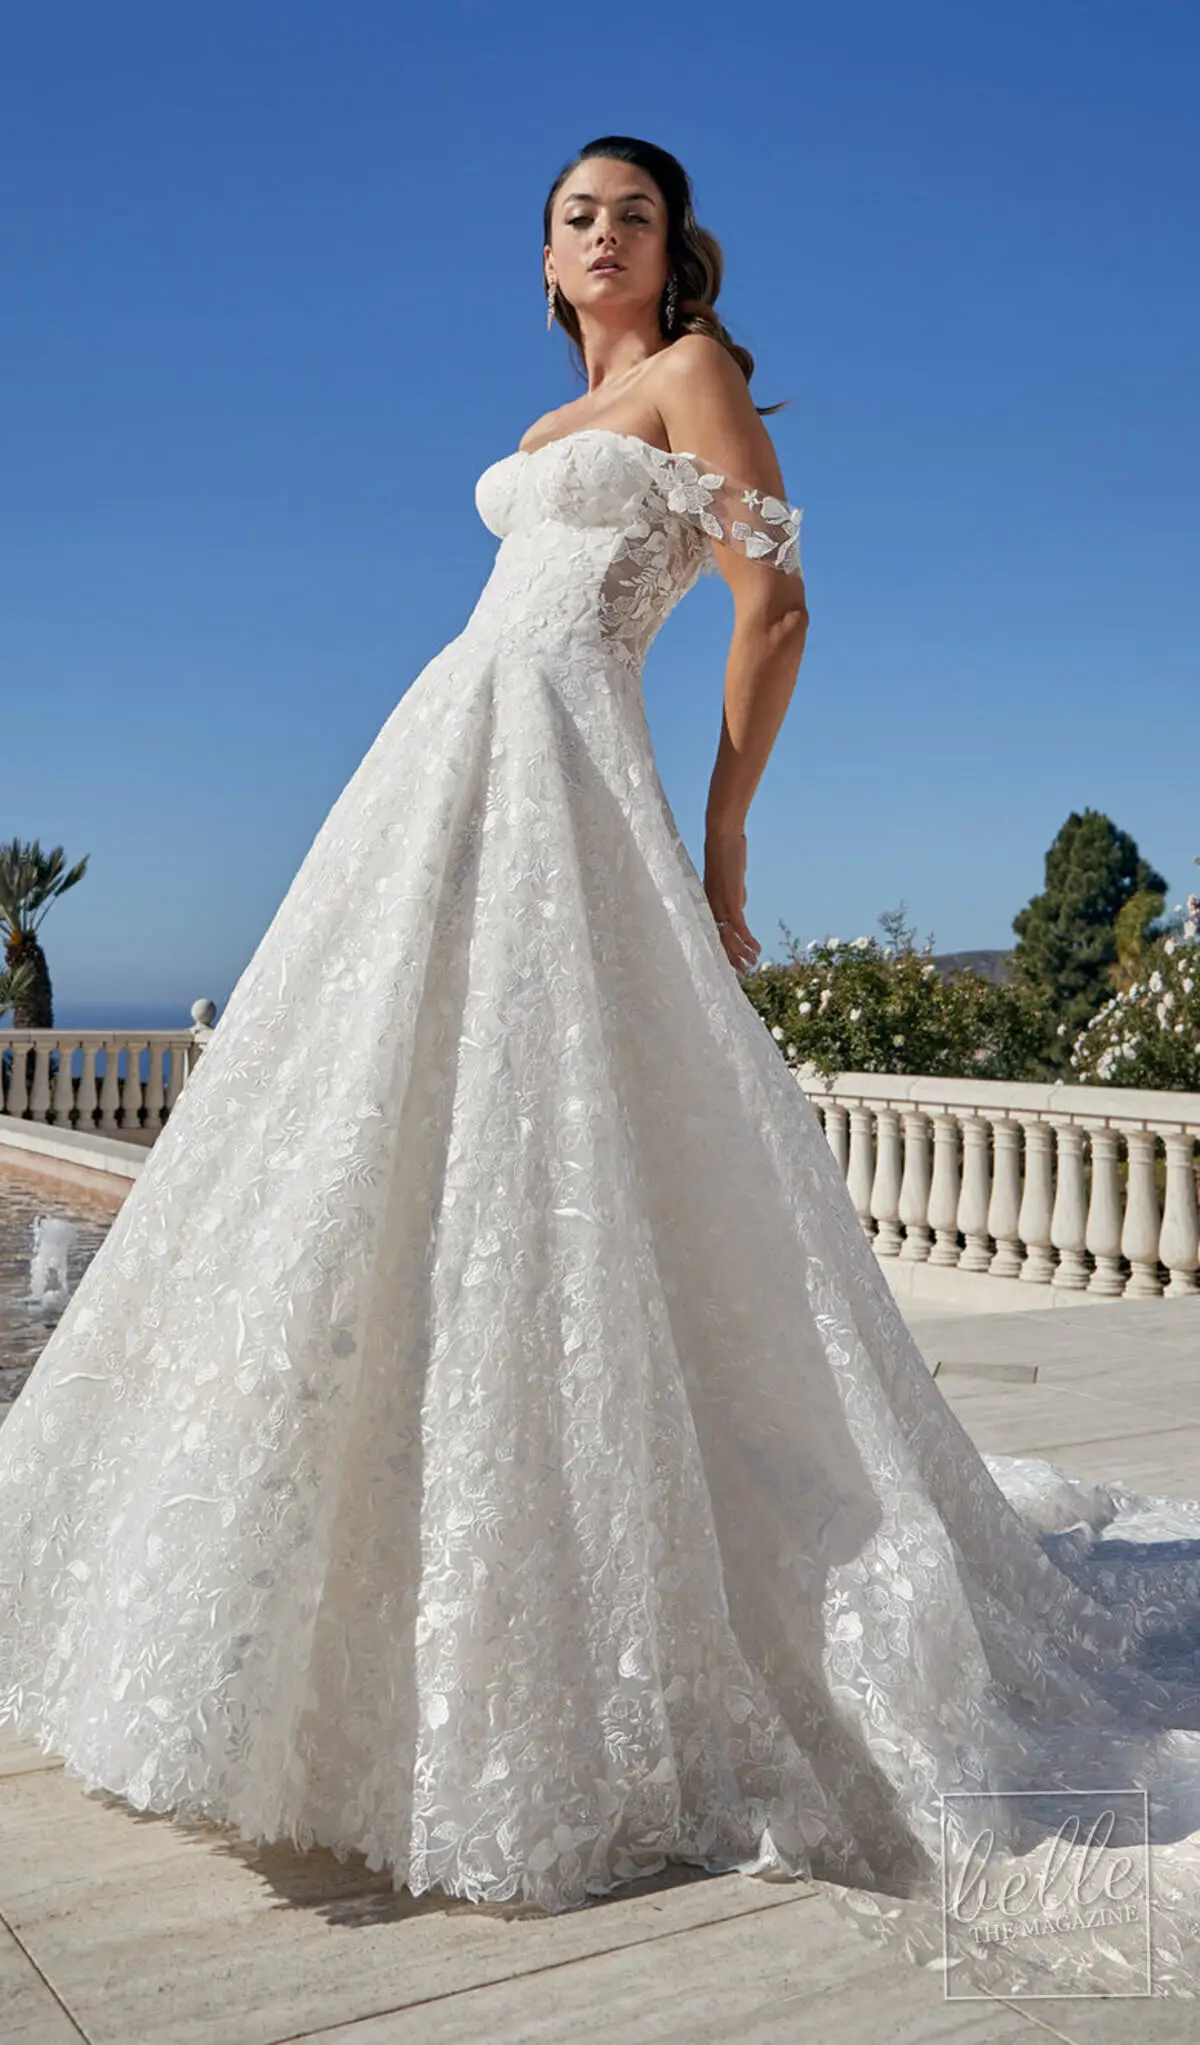 Wedding dress trends 2021 - Minimalist gown - CASABLANCA BRIDAL 2449 Addilyn